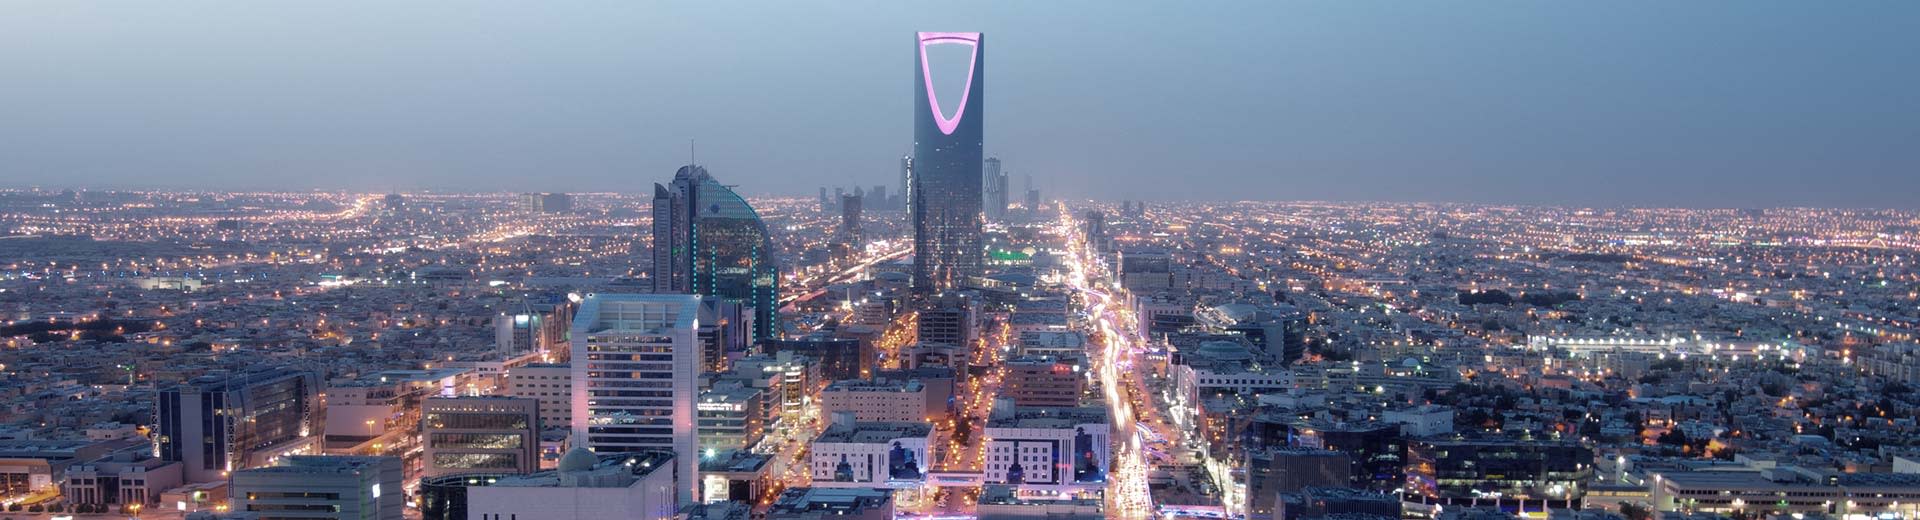 El extenso sistema de cuadrícula de Riad domina la vista, con el famoso skyscraper de botella encaramado icónicamente.